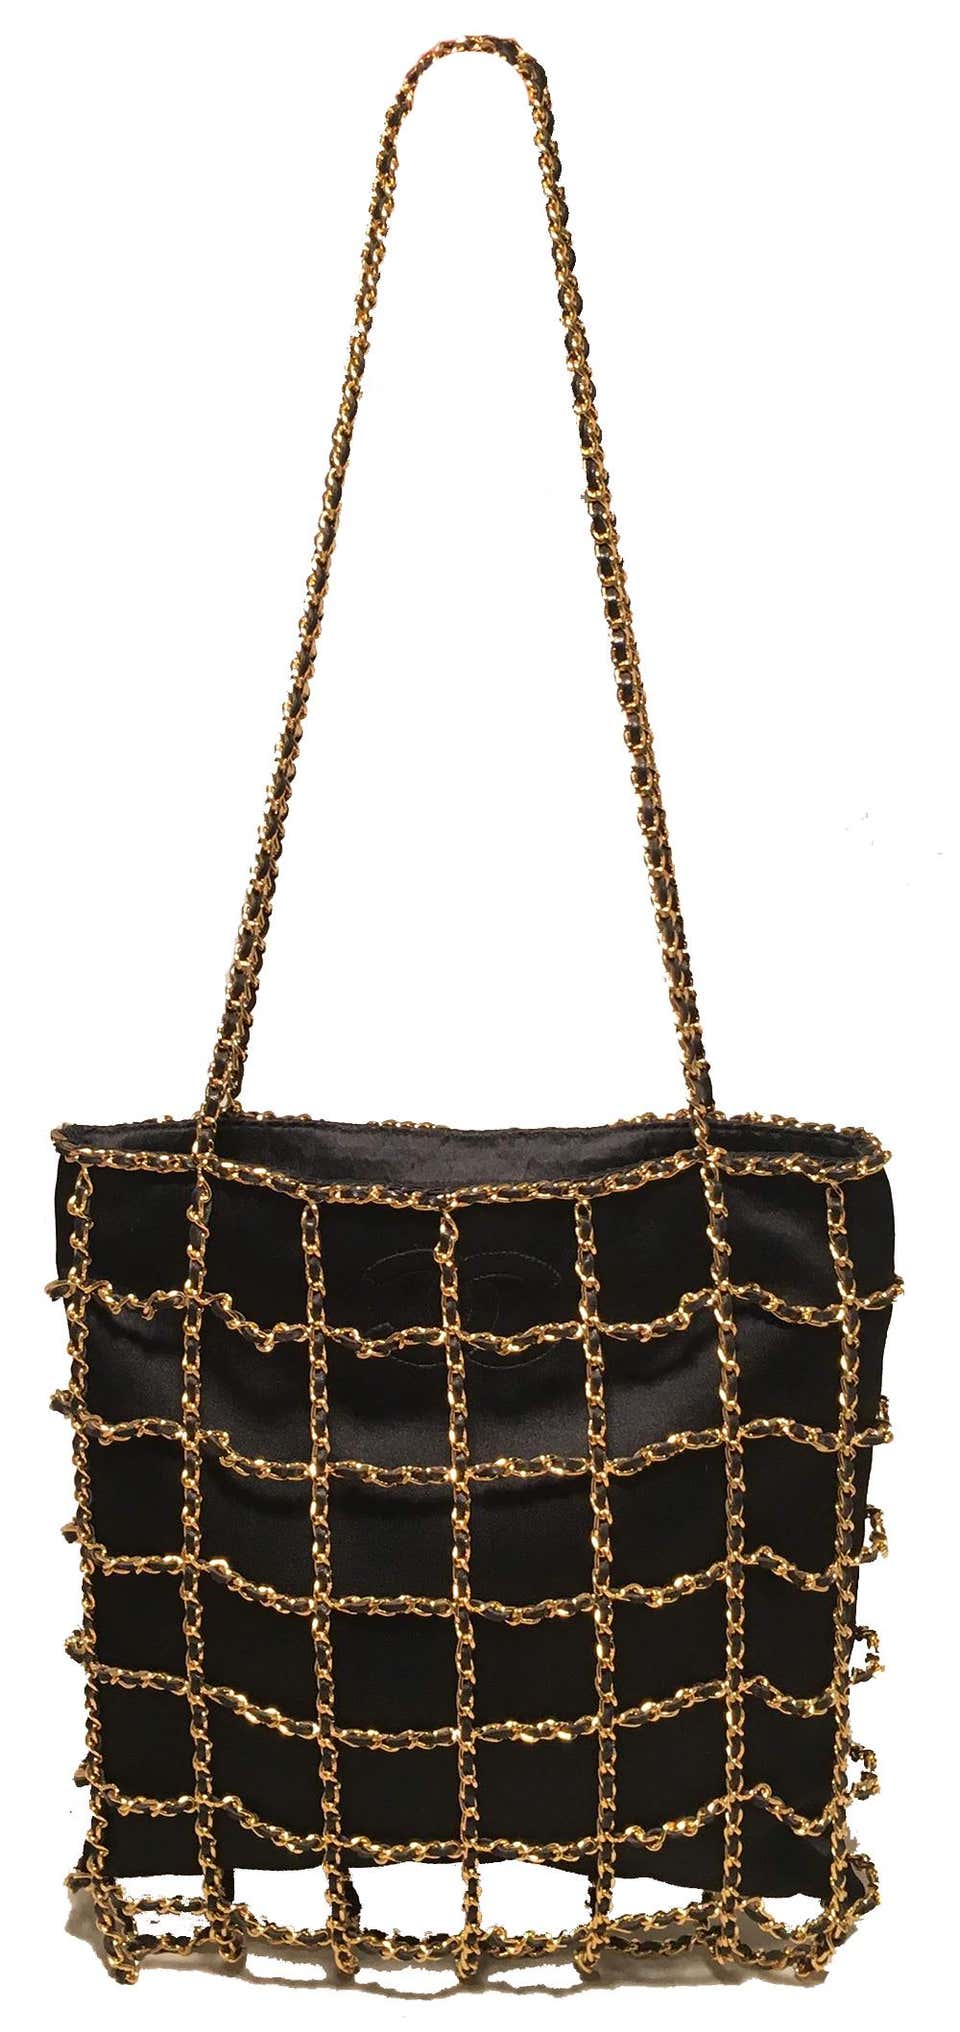 Vintage Sequin Chain Strap Bag